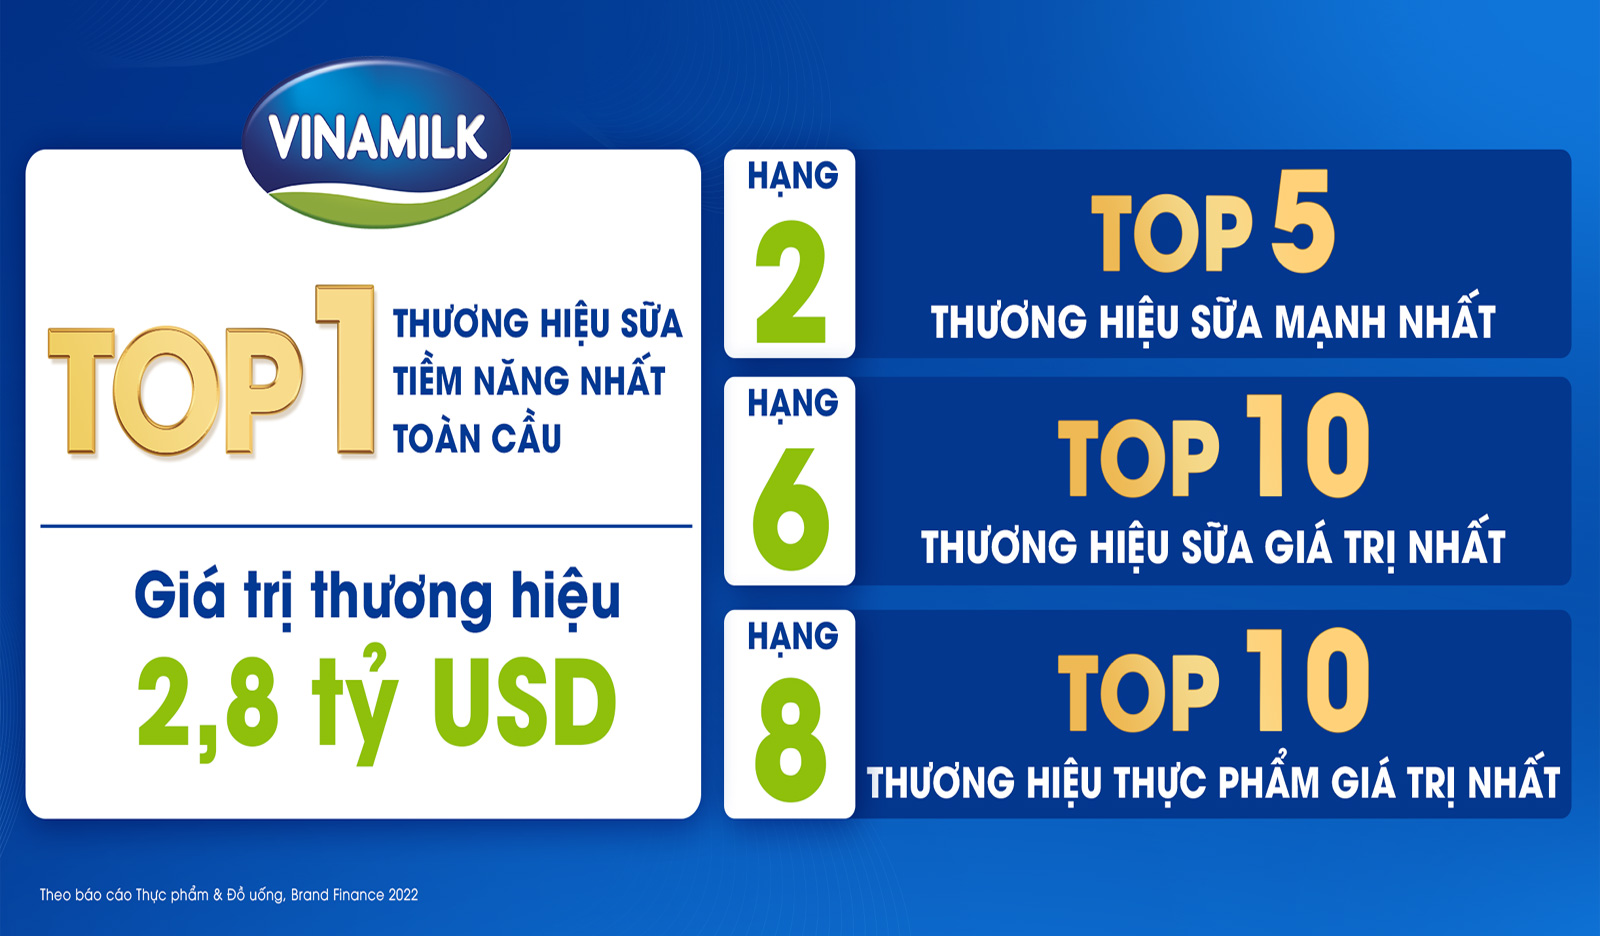 Định vị thương hiệu Vinamilk đã trở thành một trong những chủ đề nóng trong ngành công nghiệp sữa Việt Nam. Vinamilk luôn tập trung vào chất lượng sản phẩm và giá trị thương hiệu để đem đến cho khách hàng sự tin tưởng và hài lòng. Cùng khám phá hình ảnh định vị thương hiệu Vinamilk để hiểu rõ hơn về chiến lược làm việc của họ.